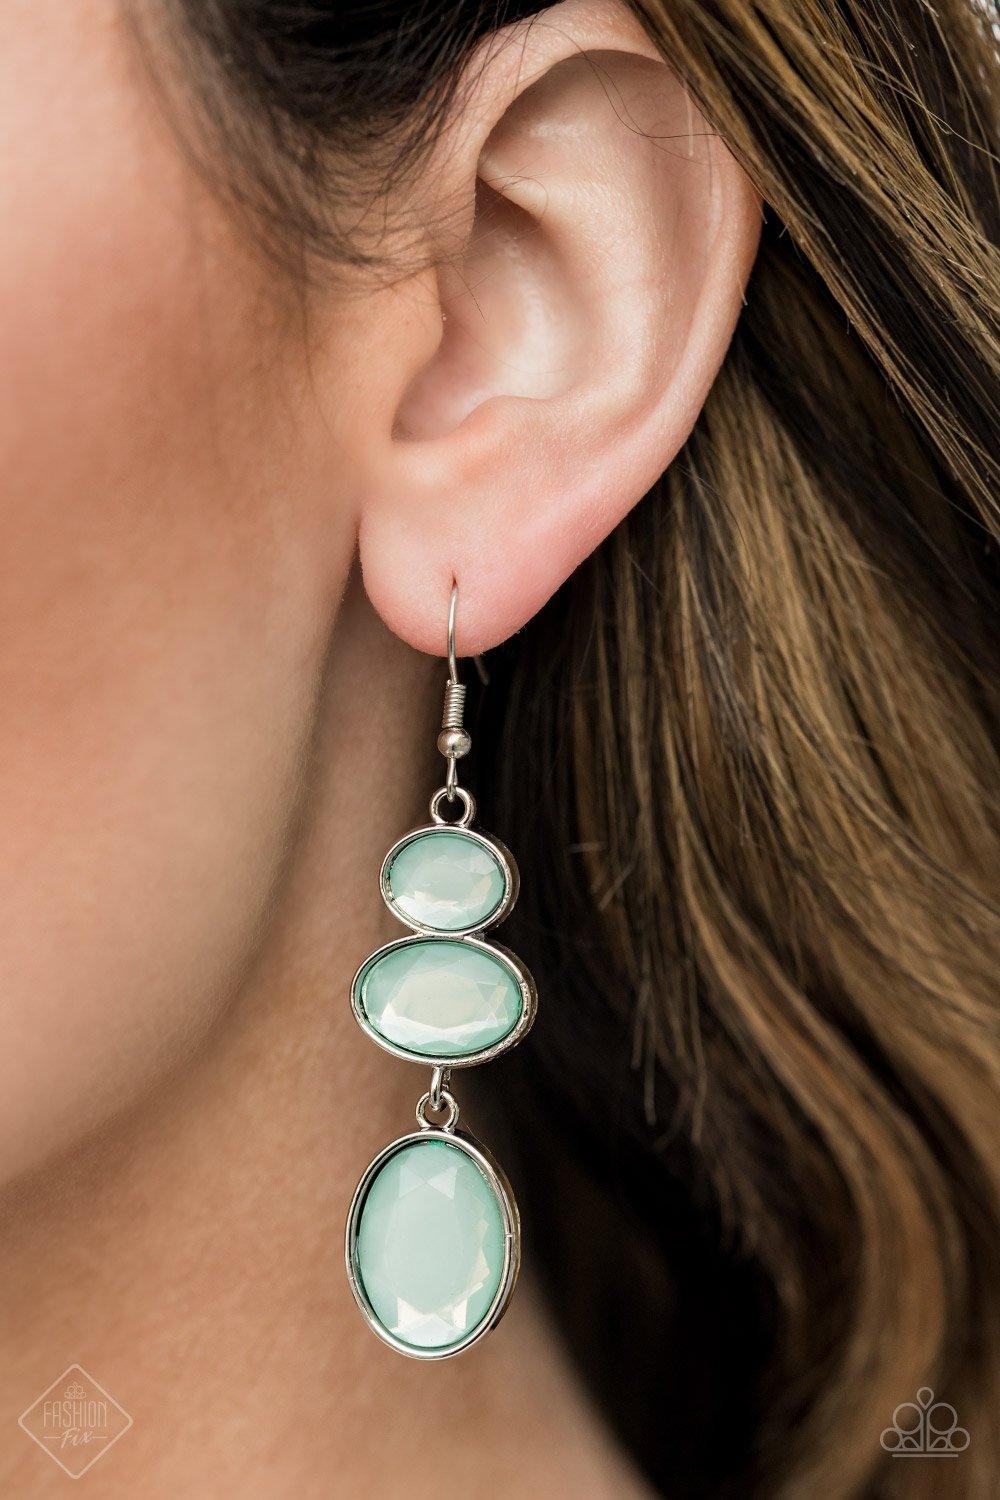 Tiers Of Tranquility Blue Earrings - Jewelry By Bretta